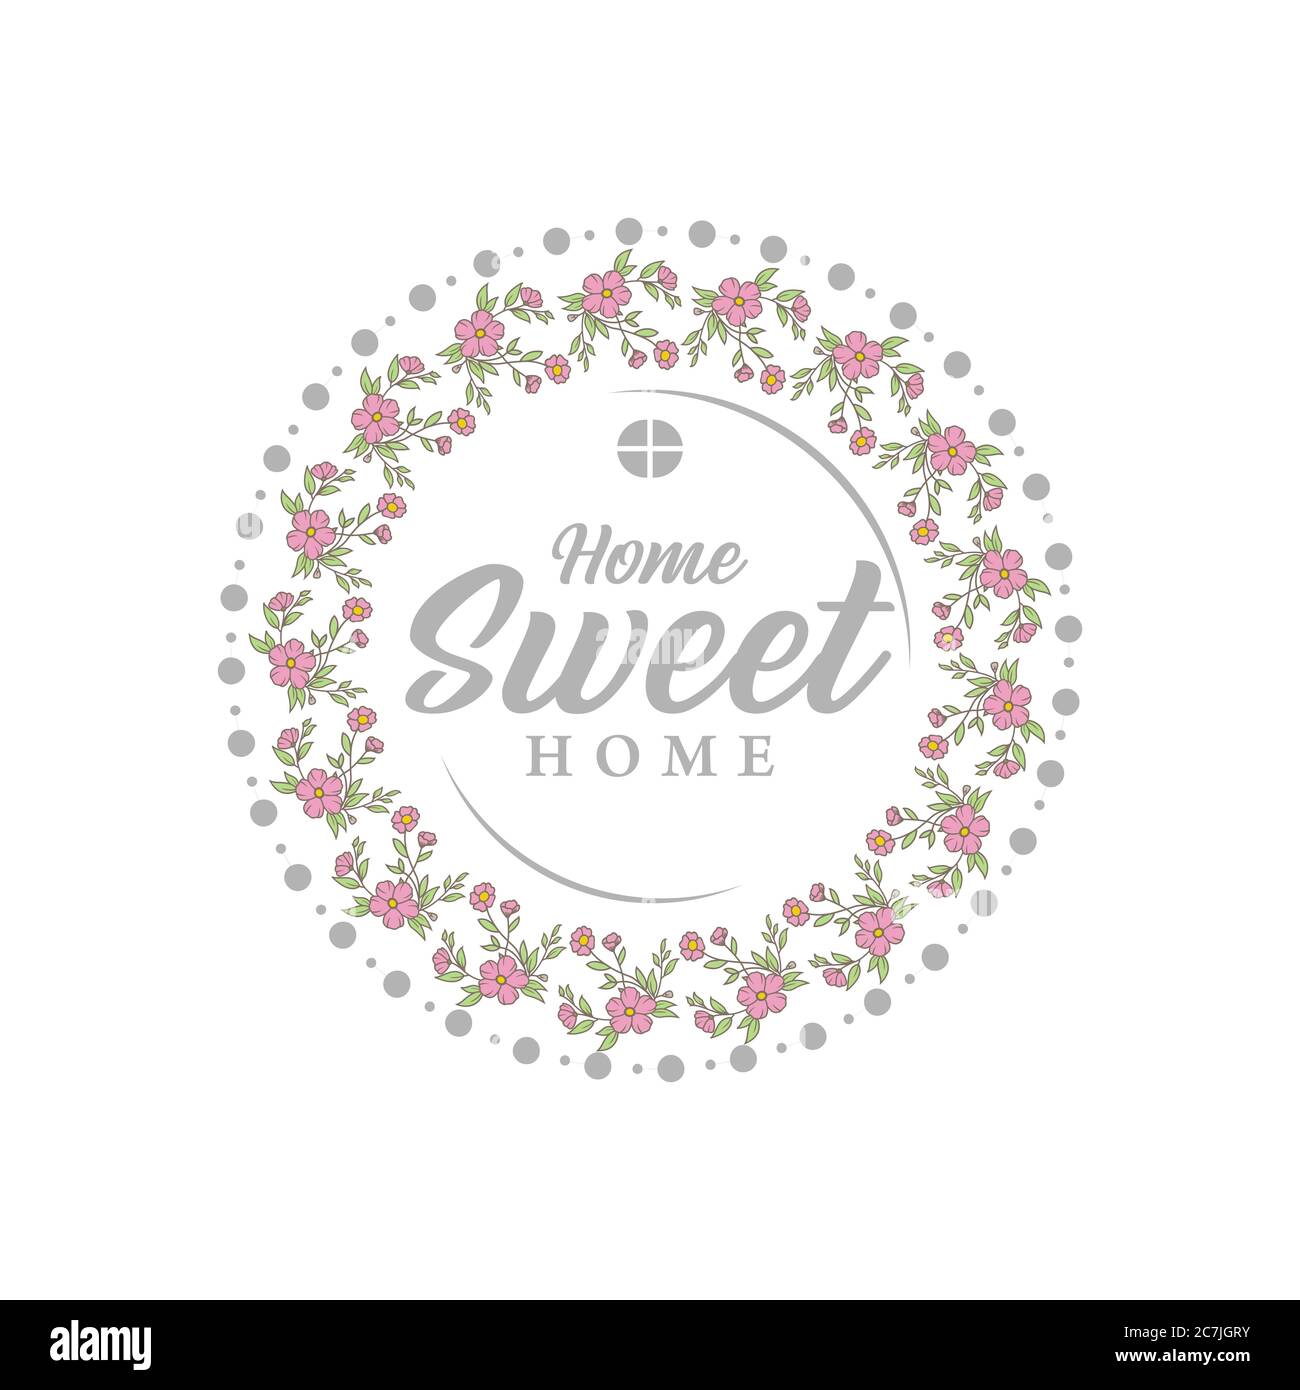 Home Sweet Home - Poster Di Tipografia. Stampa scritta a mano. Immagine vettoriale vintage con cappa casa e cuore bello e camino incenso. Illustrazione Vettoriale